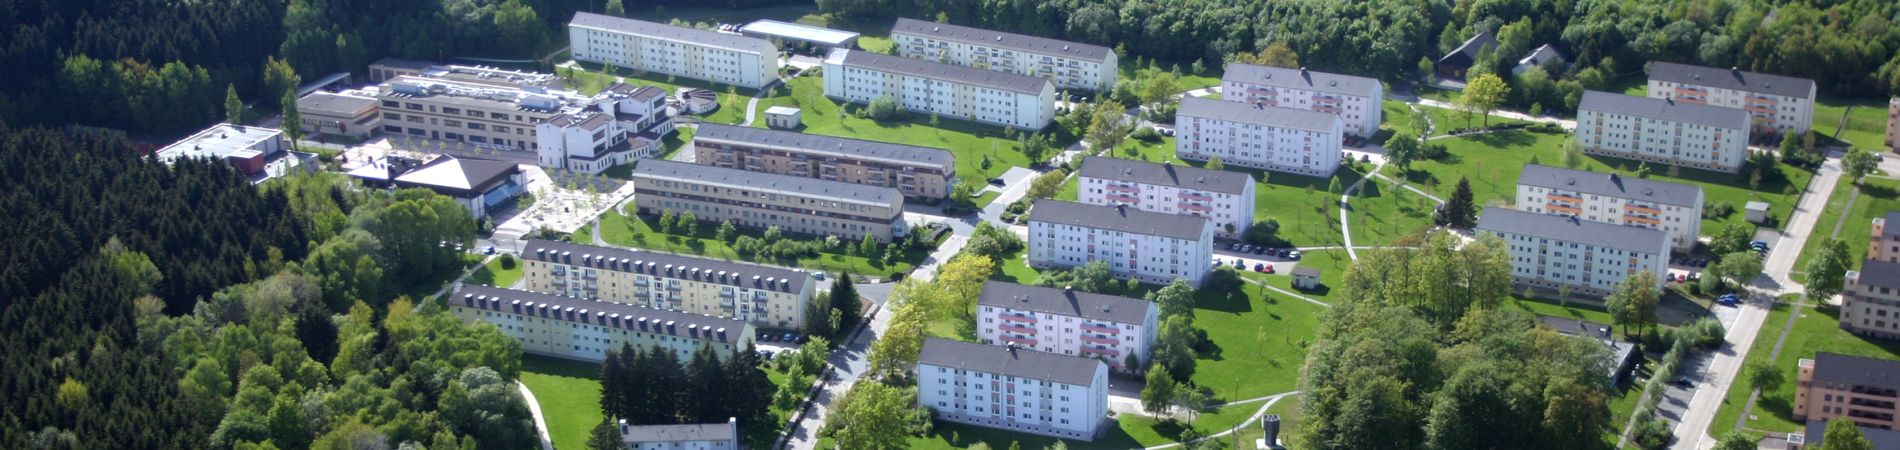 Luftbild der Hochschule der Polizei Rheinland-Pfalz